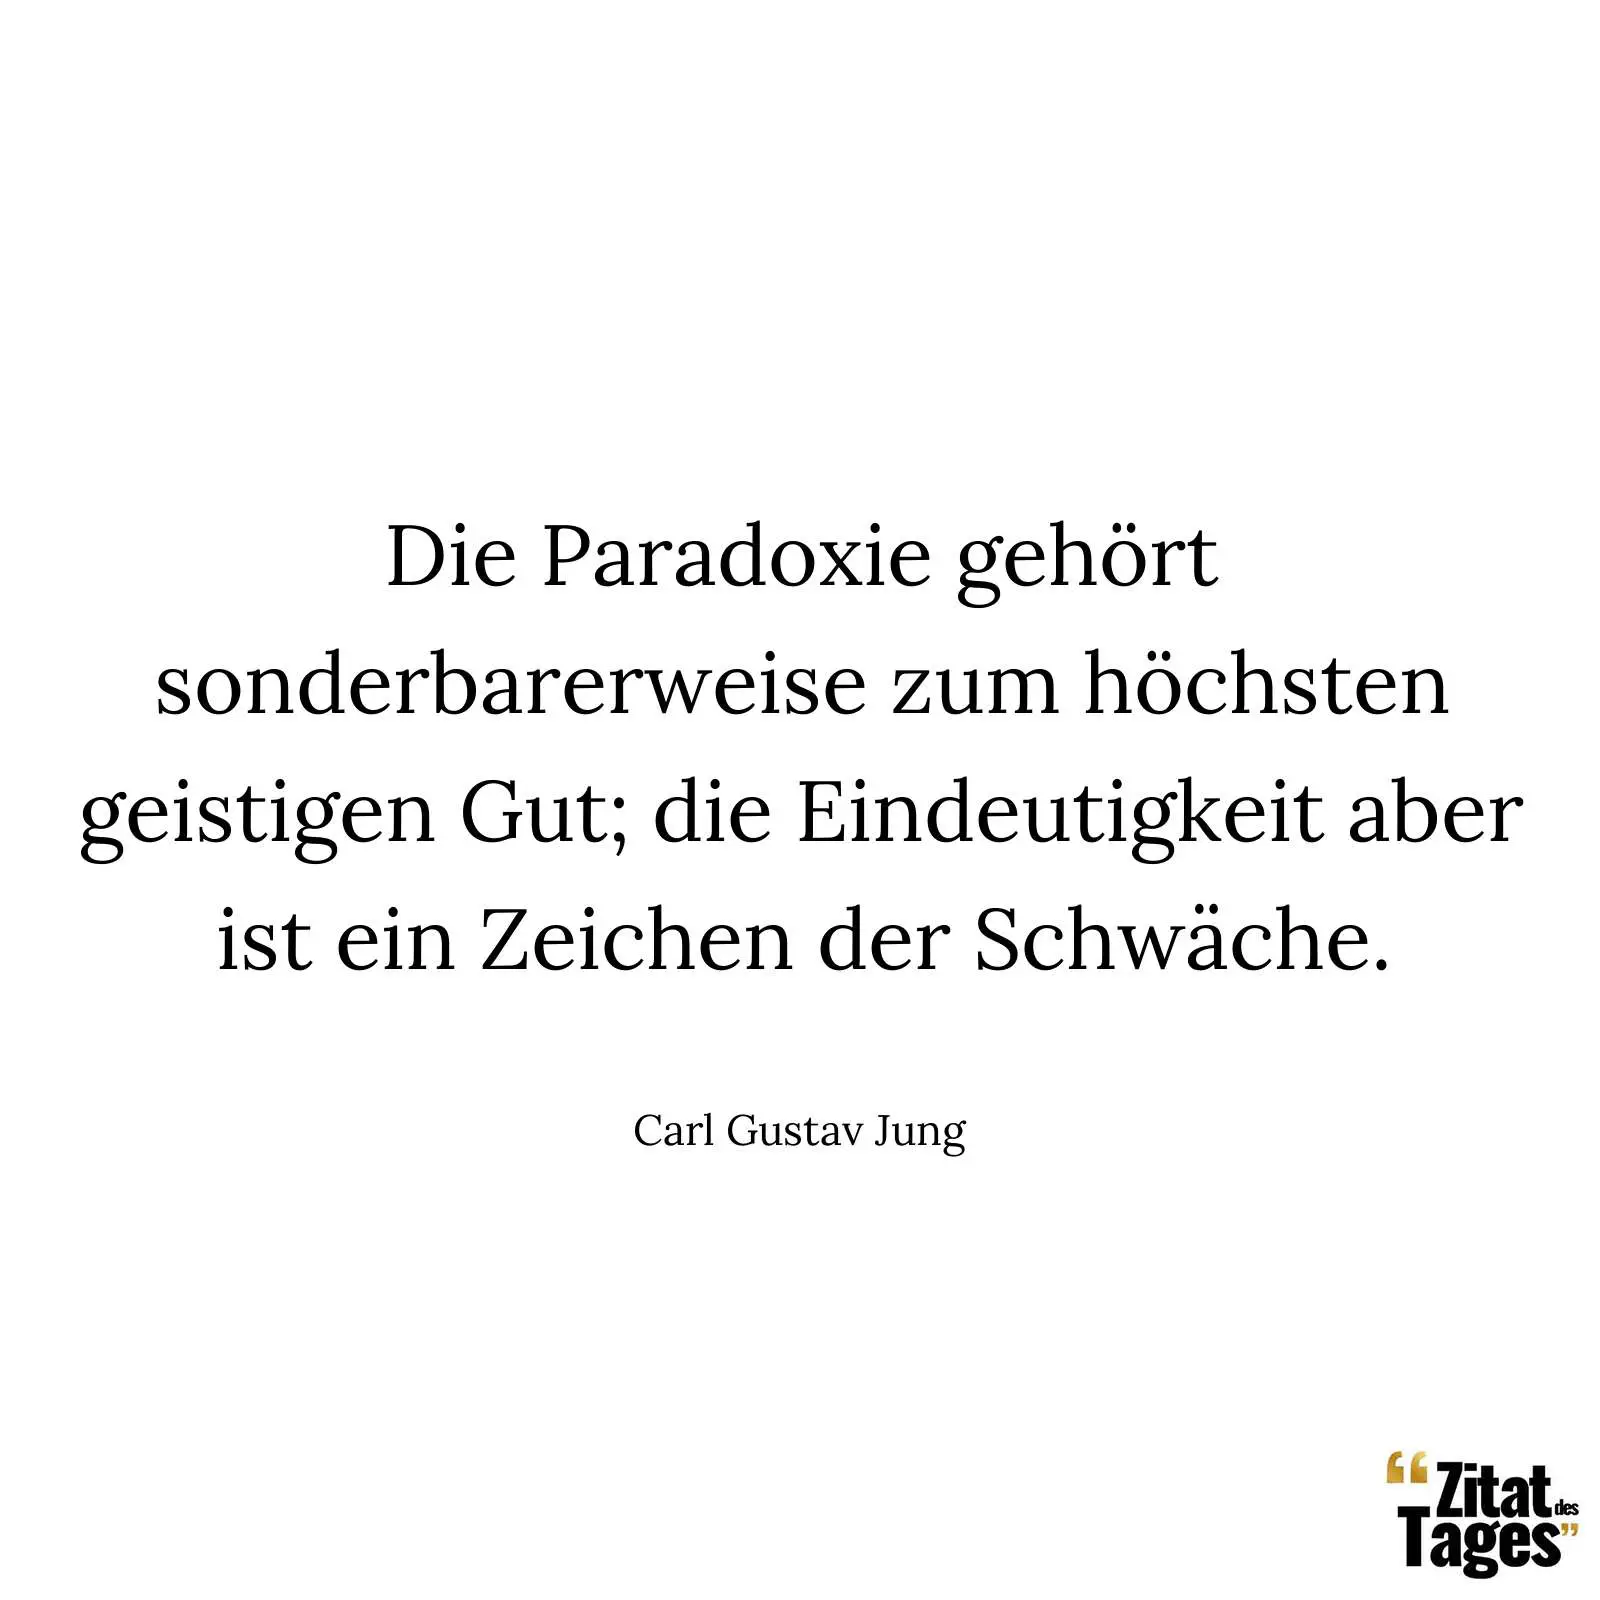 Die Paradoxie gehört sonderbarerweise zum höchsten geistigen Gut; die Eindeutigkeit aber ist ein Zeichen der Schwäche. - Carl Gustav Jung